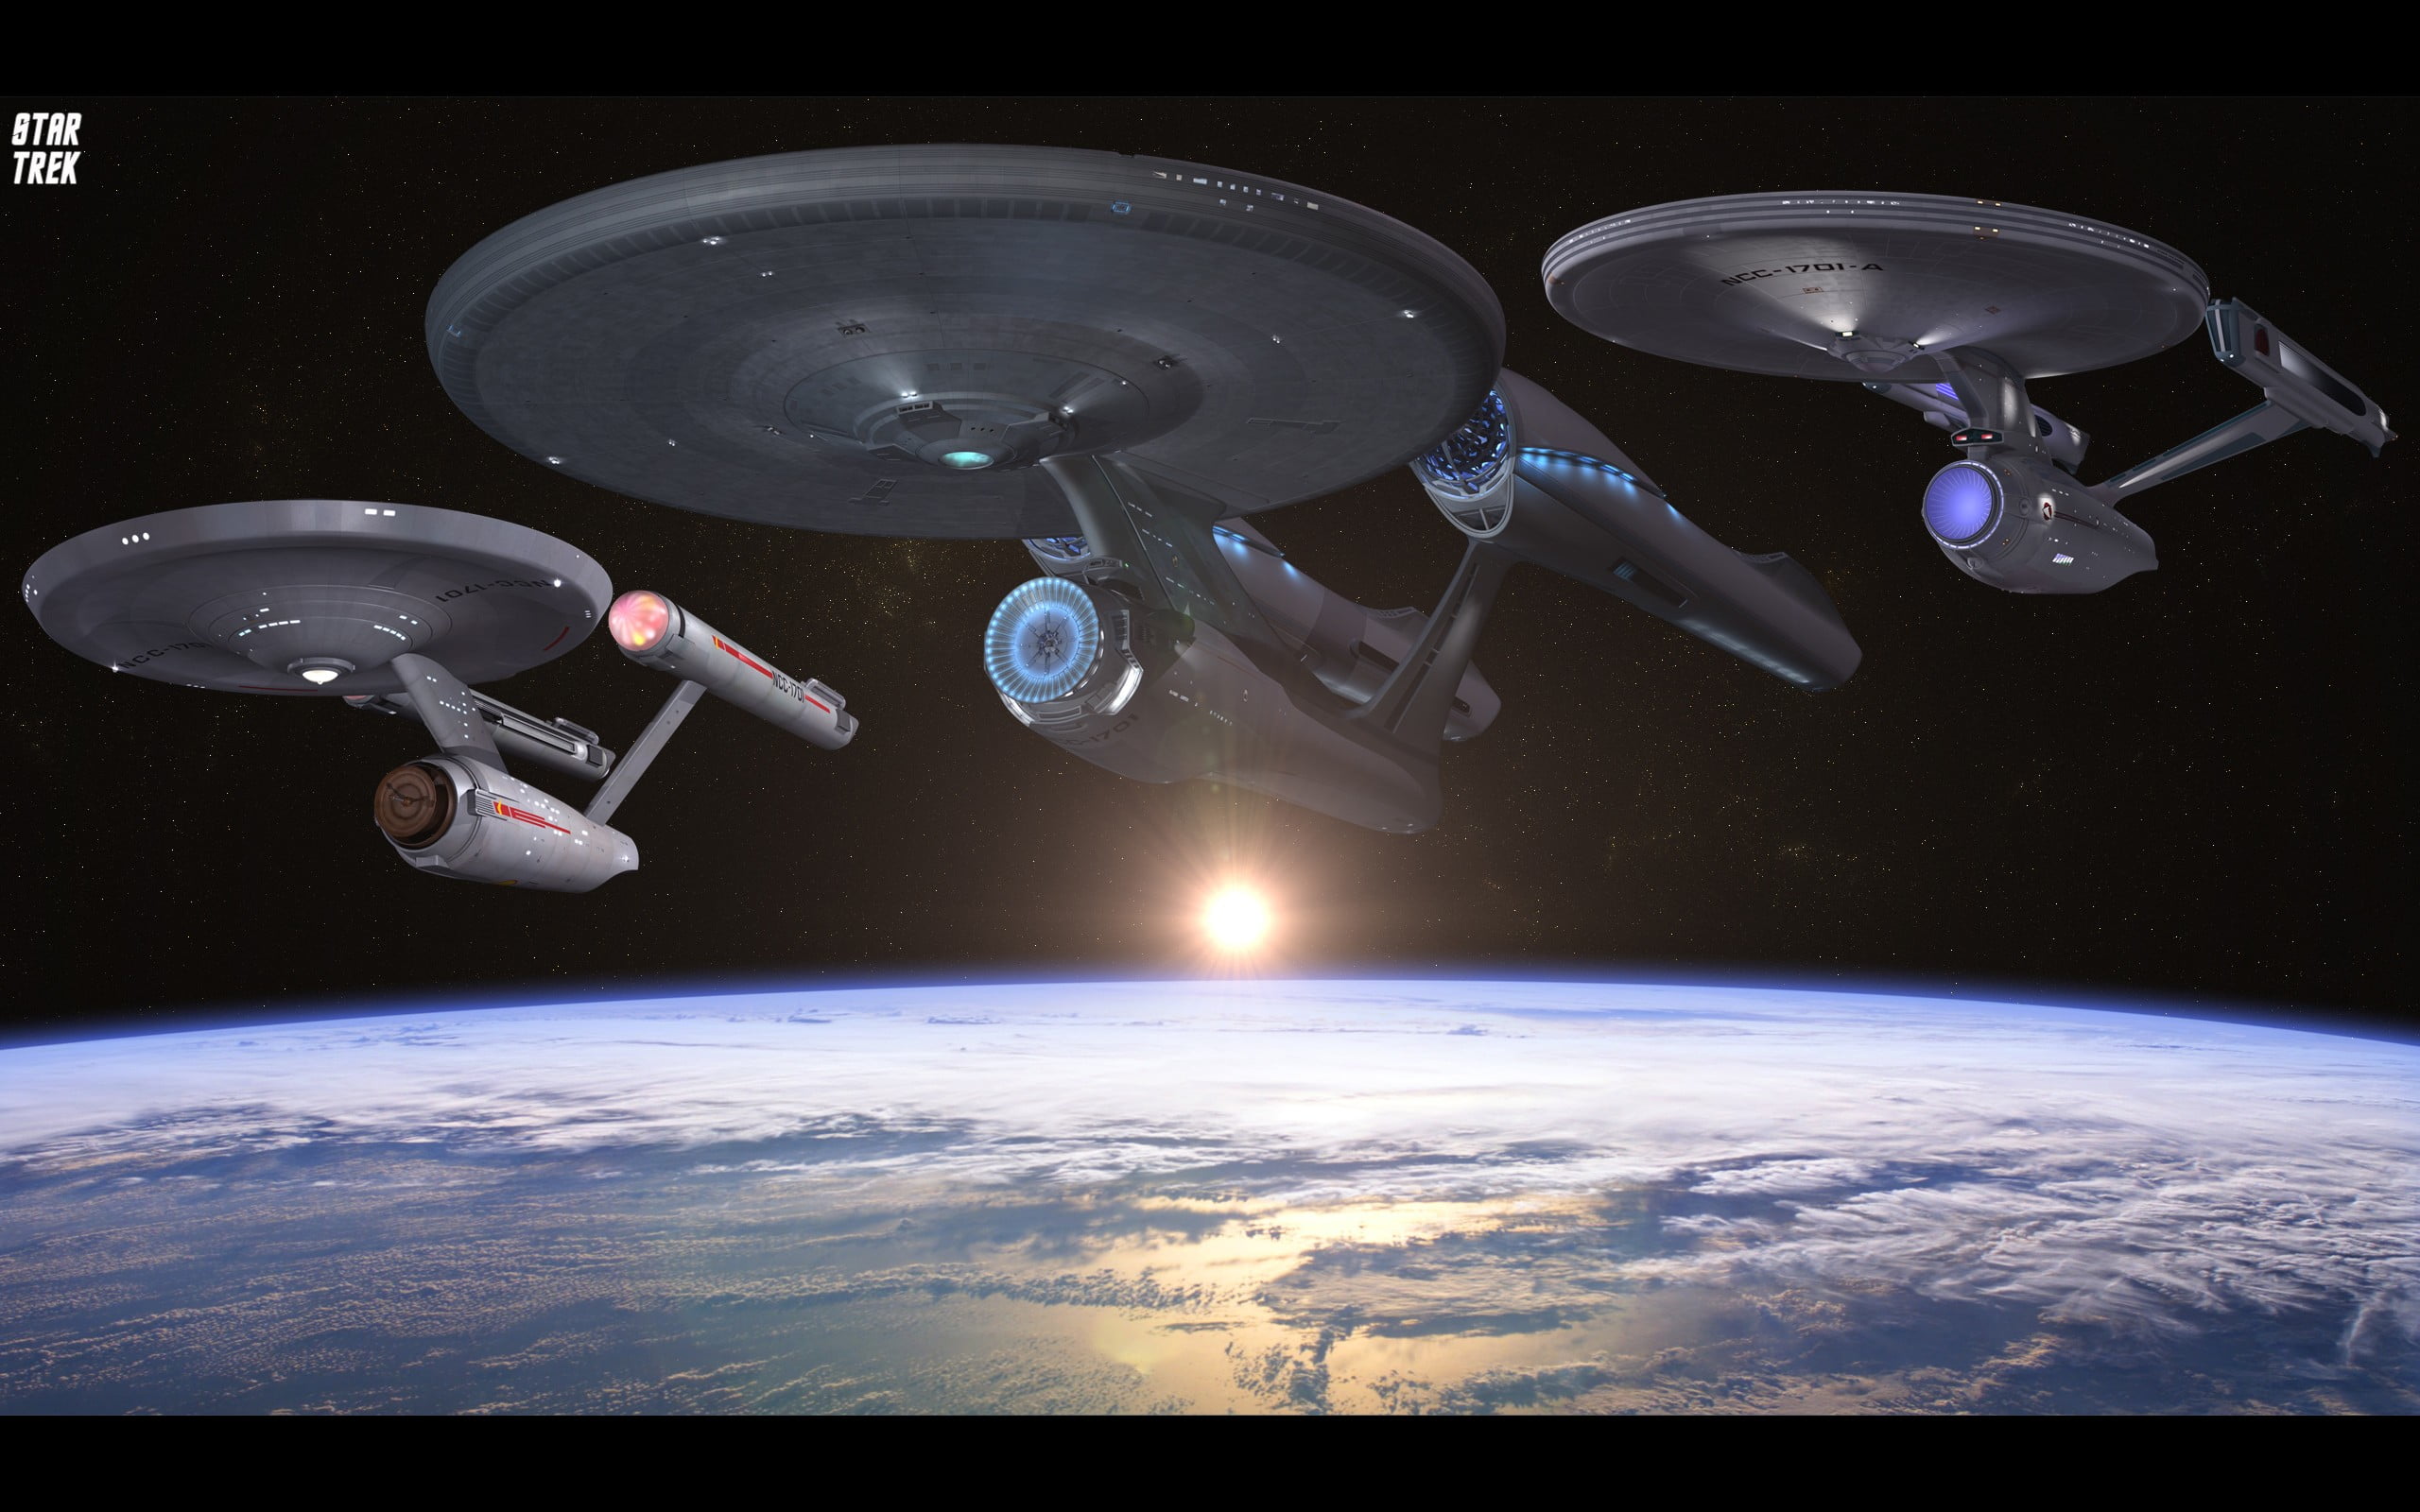 star-trek-movie-still-star-trek-uss-enterprise-spaceship-space